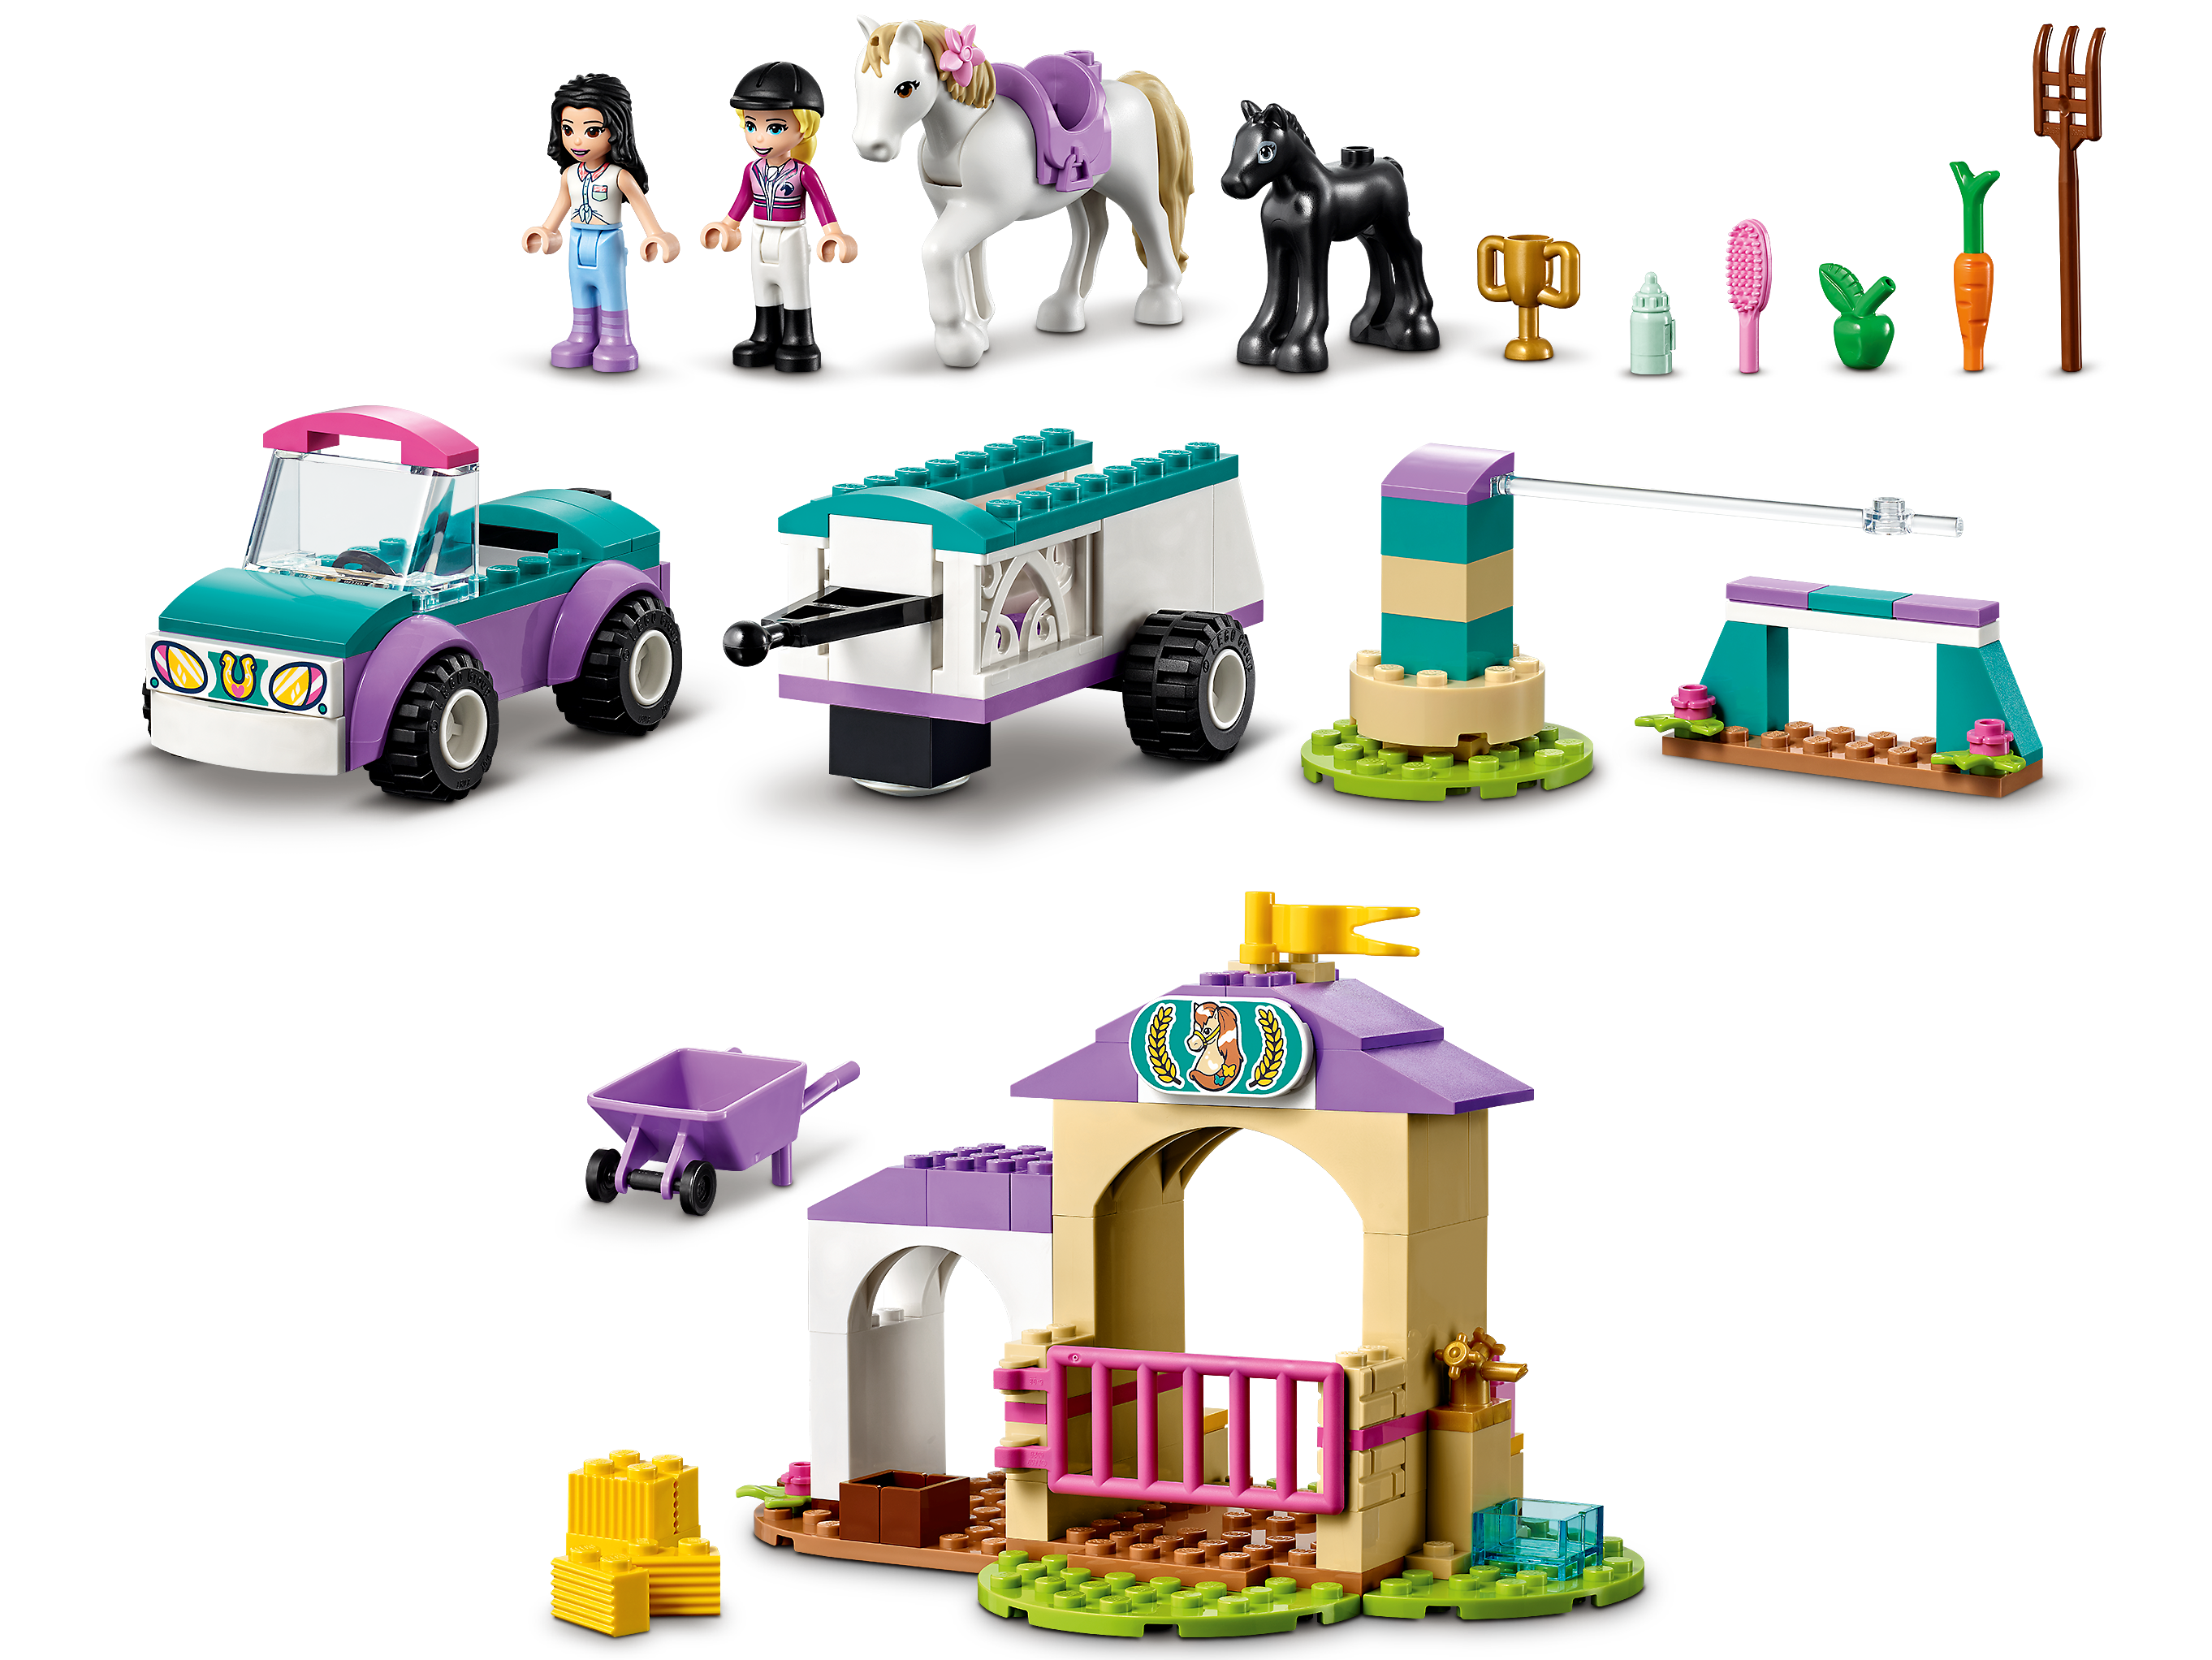 Friends - Le dressage de chevaux et la remorque (41441) LEGO